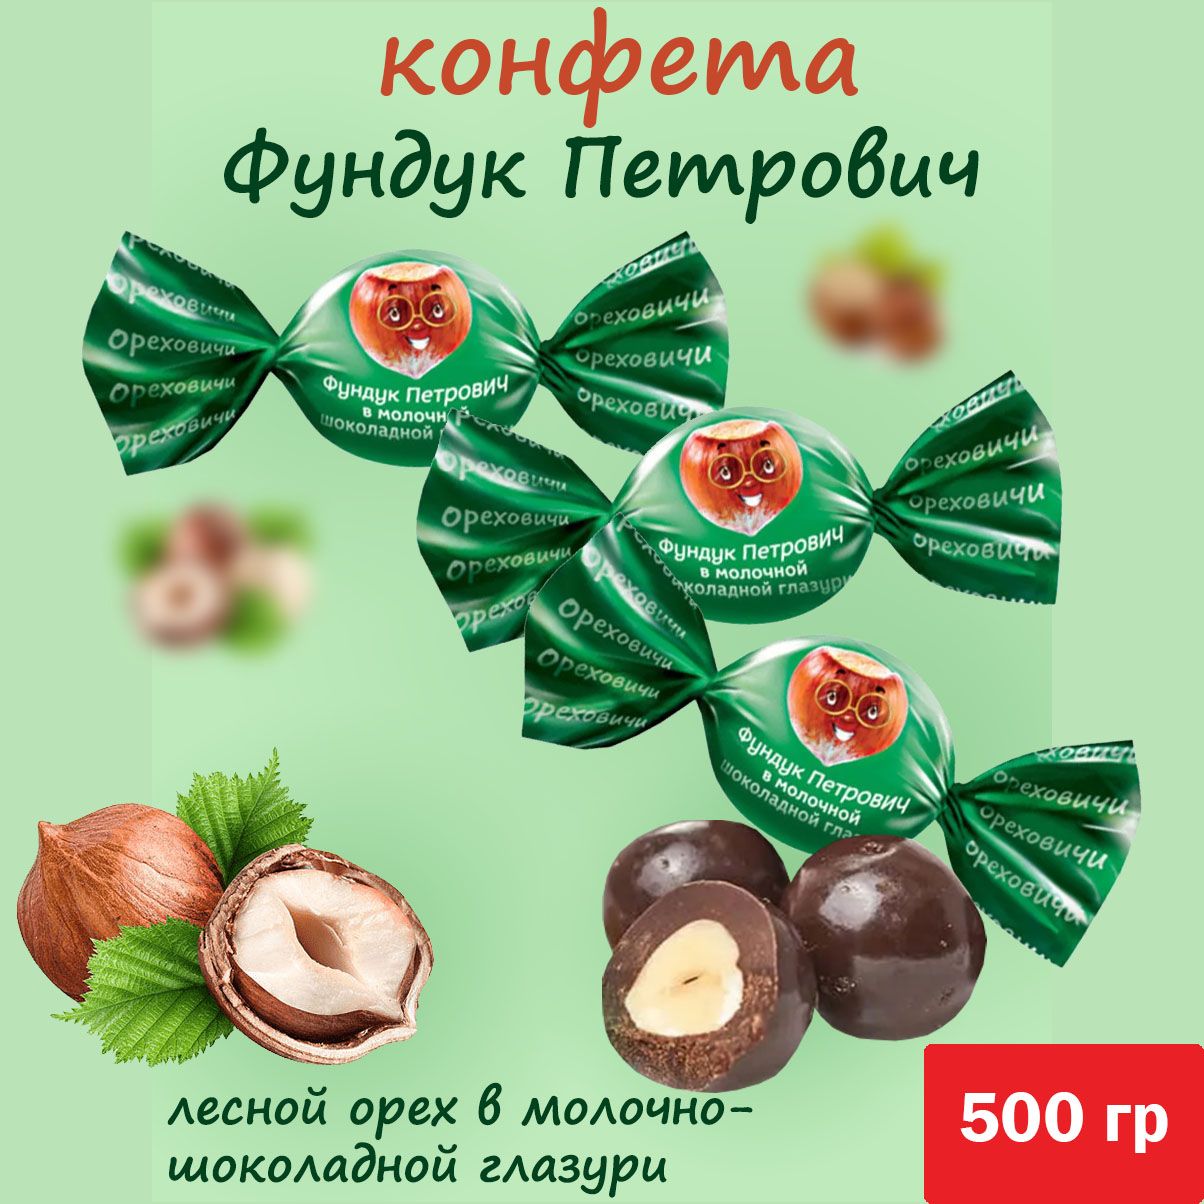 «Ореховичи», конфета «фундук Петрович» в молочной шоколадной глазури